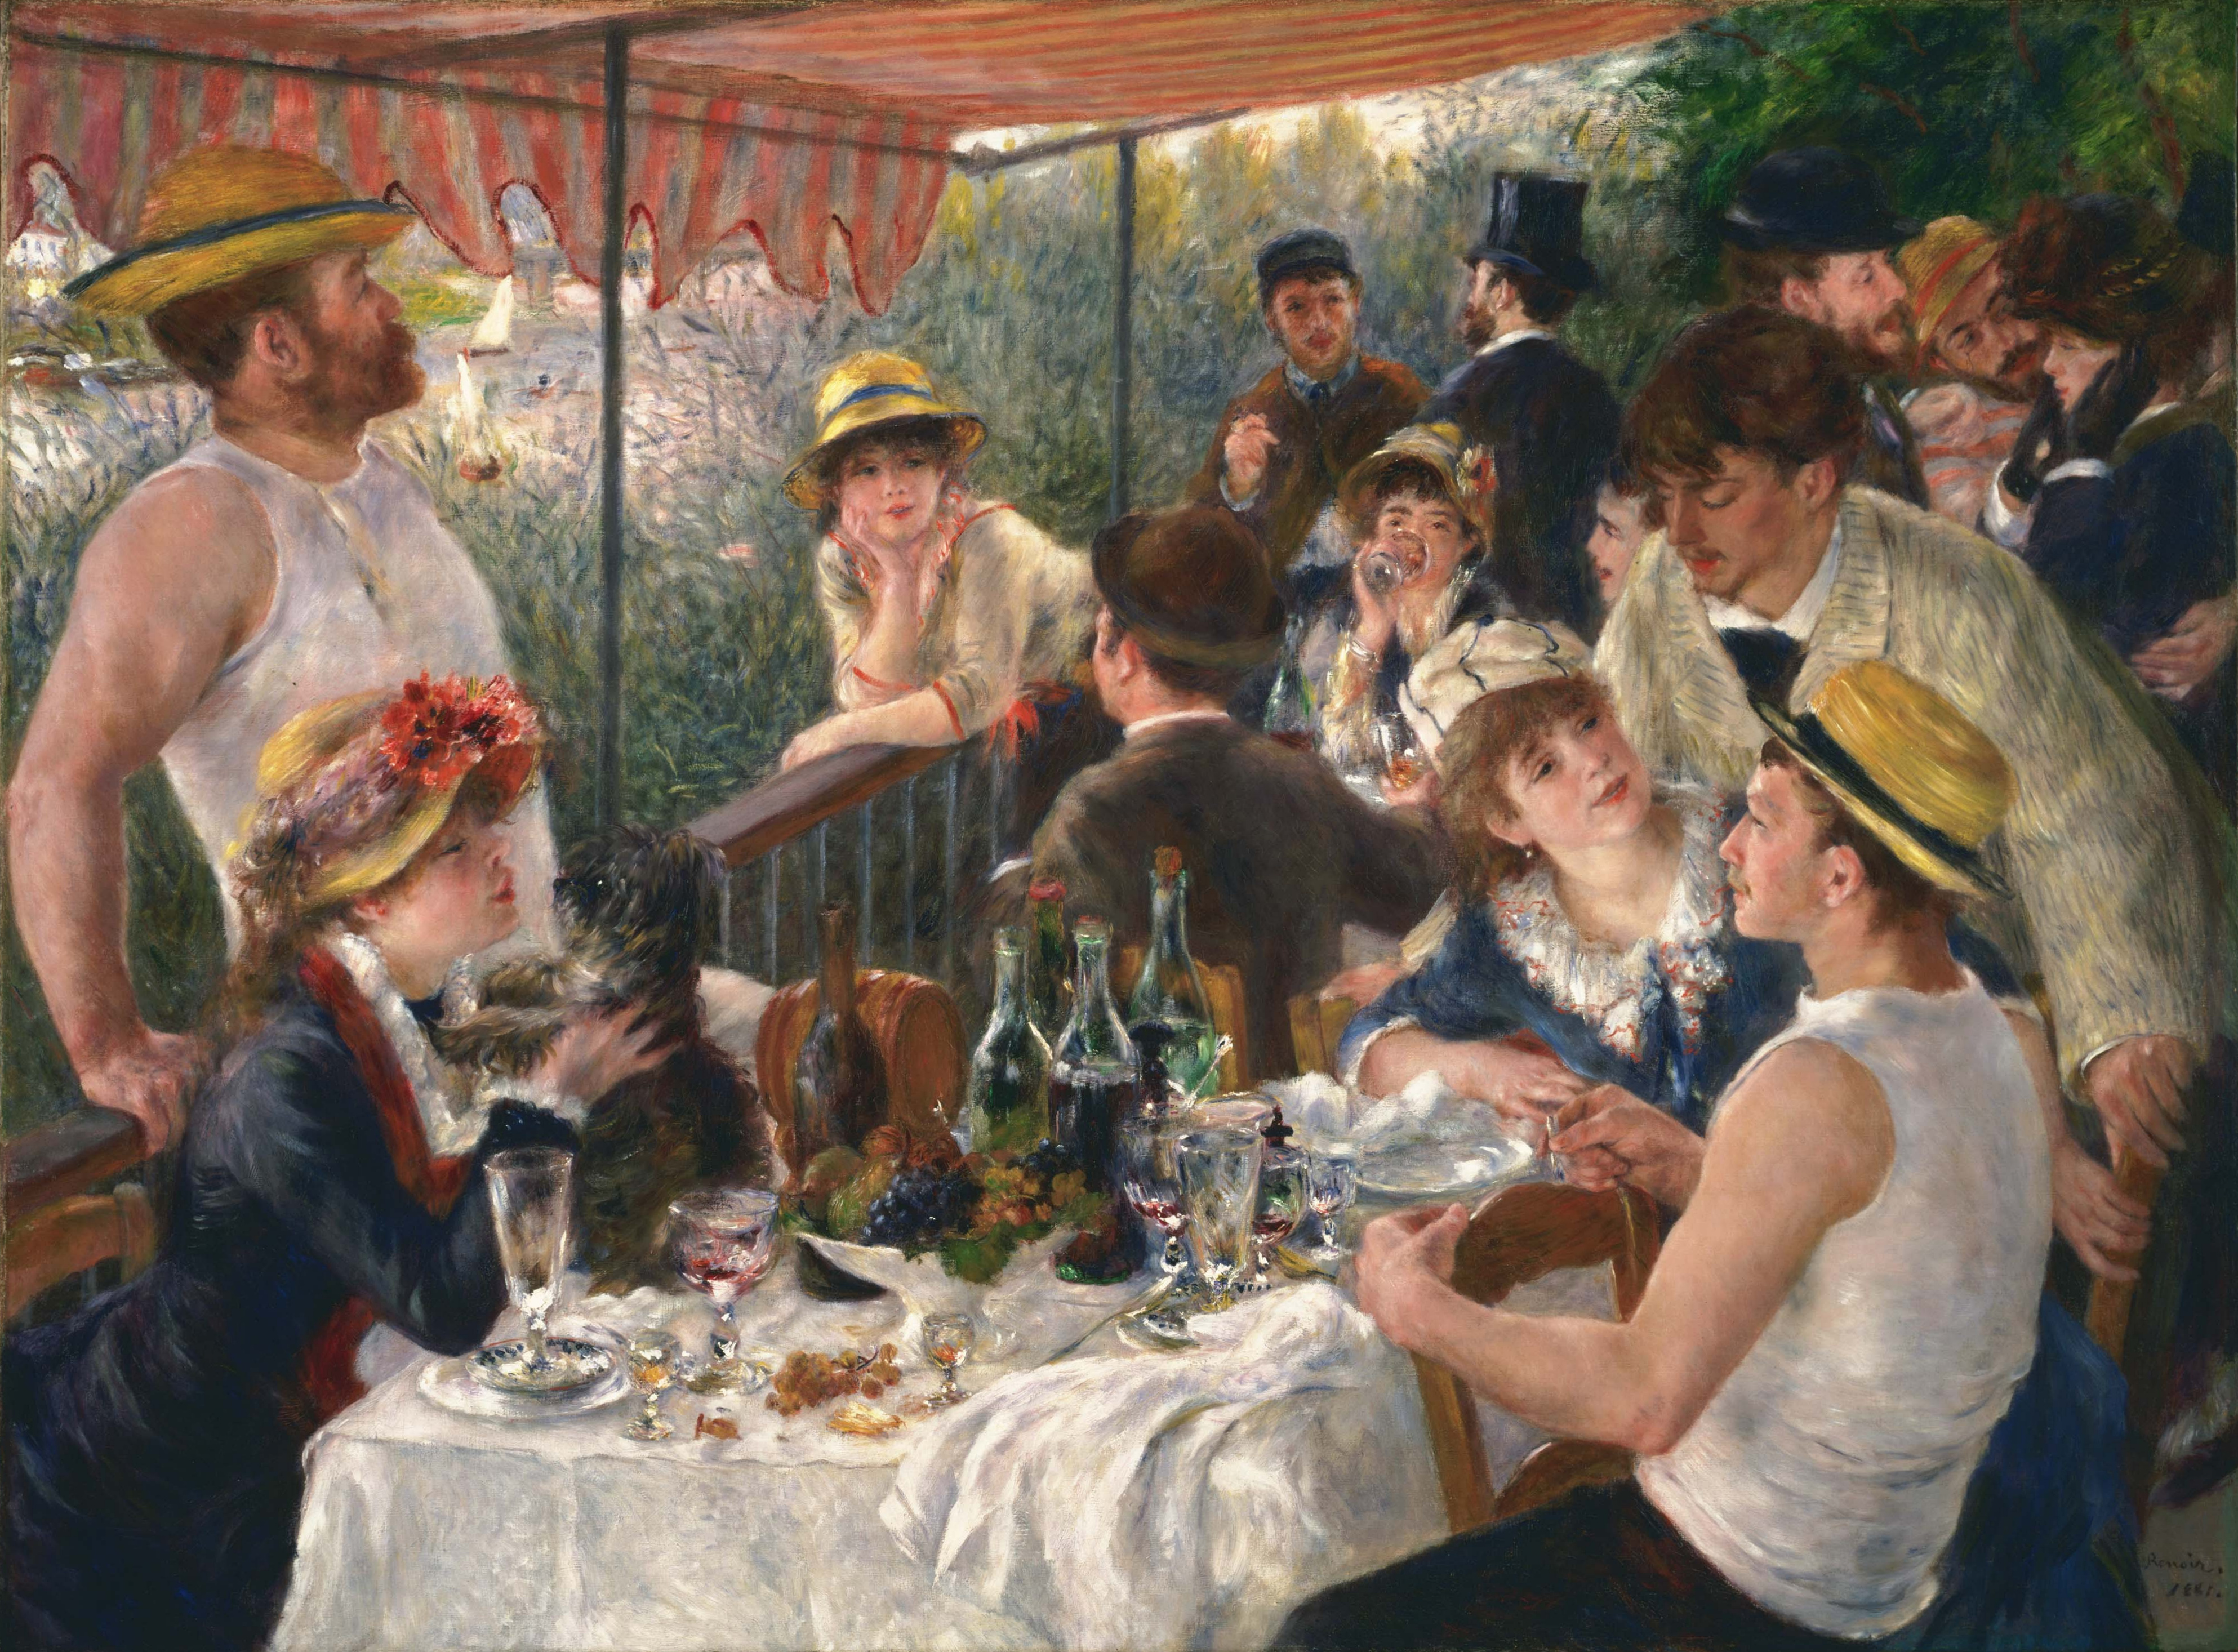 نقاشی های معروف امپرسیونیسم (ناهار مهمانی و قایقرانی اثر پیر آگوست رنوار، 1881)